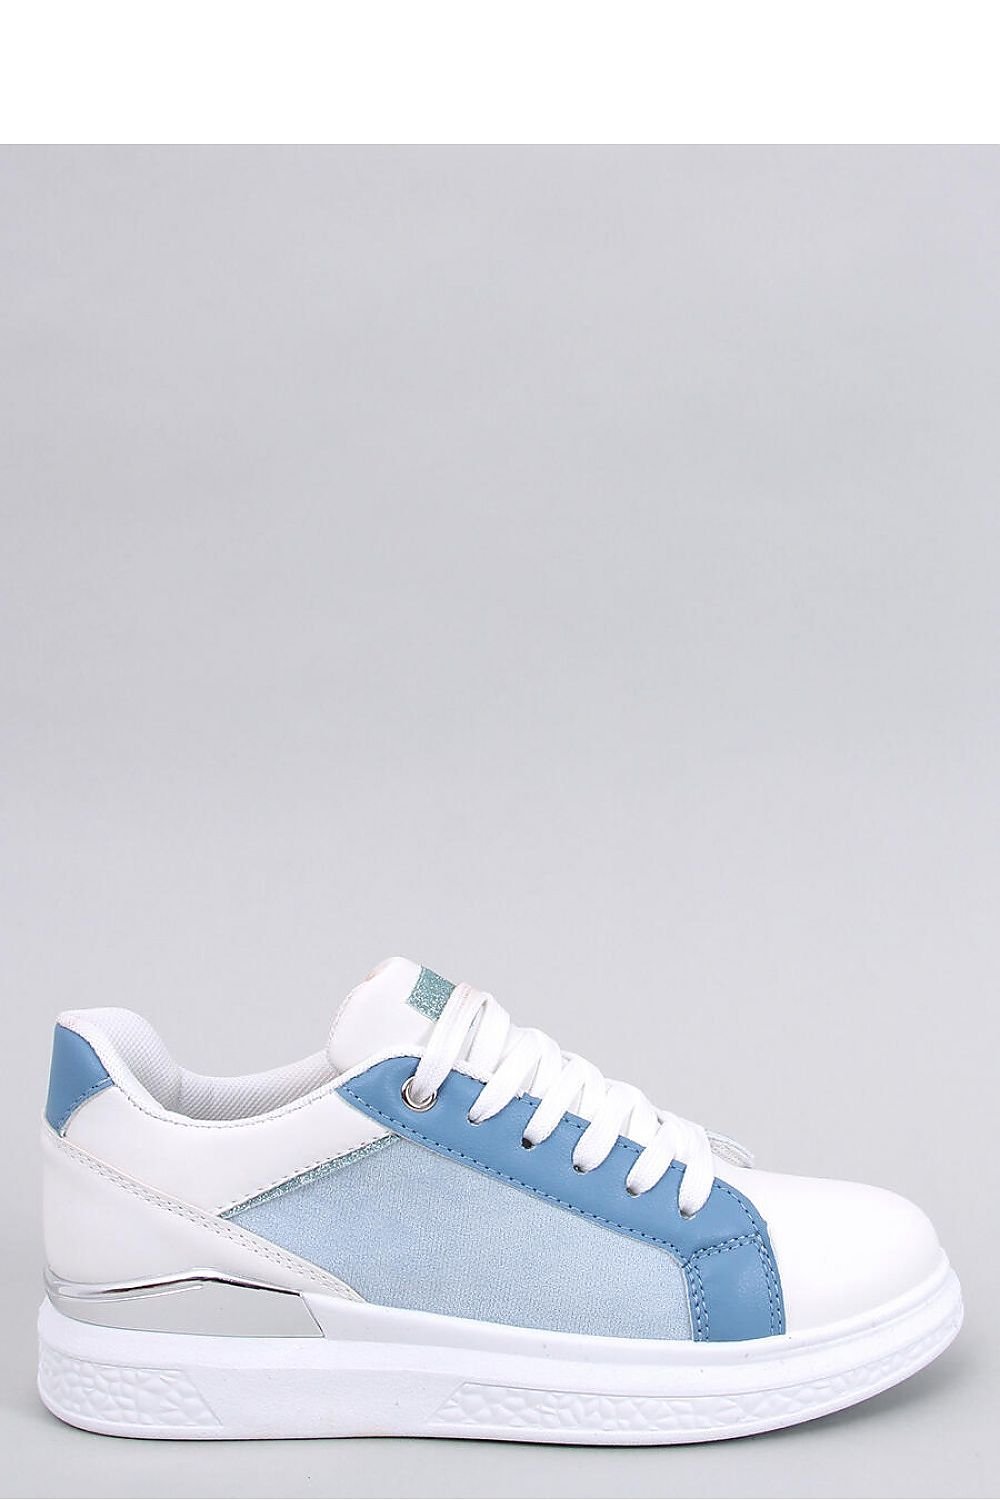 Αθλητικά Sneakers Γυναικεία Παπούτσια λευκό - μπλε